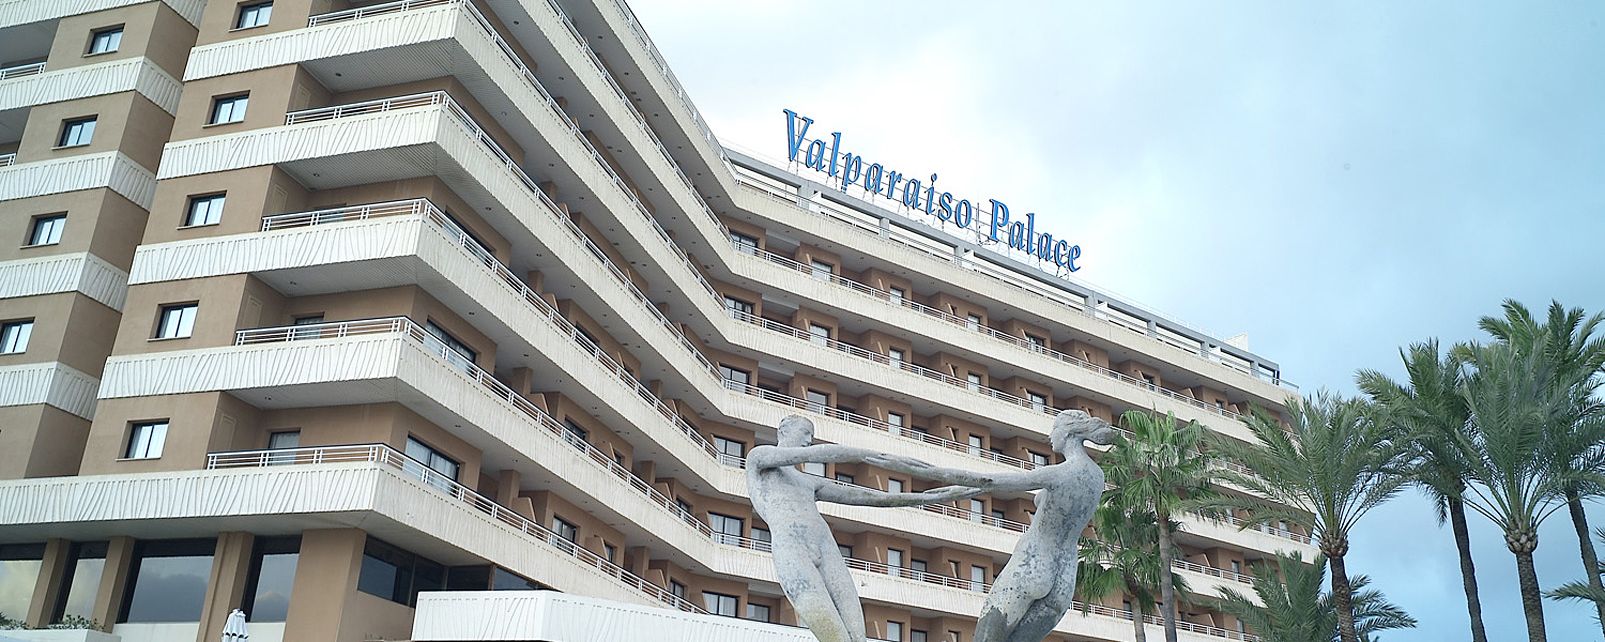 Hotel Grupotel Valparaíso Palace